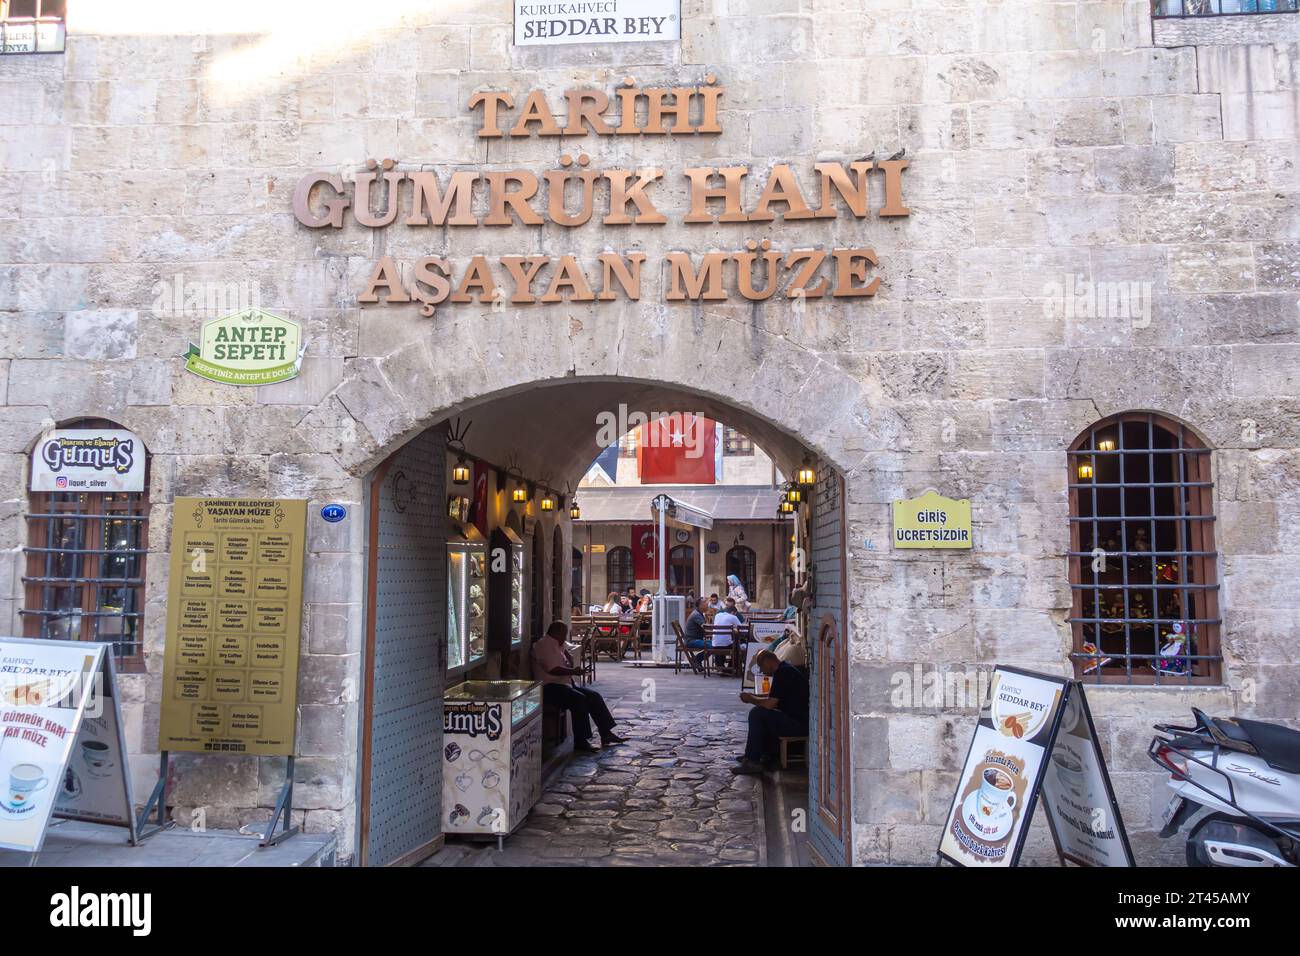 Yasayan Muze Tarihi Gumruk Hani Heritage Museum in Gaziantep, Türkiye Stockfoto